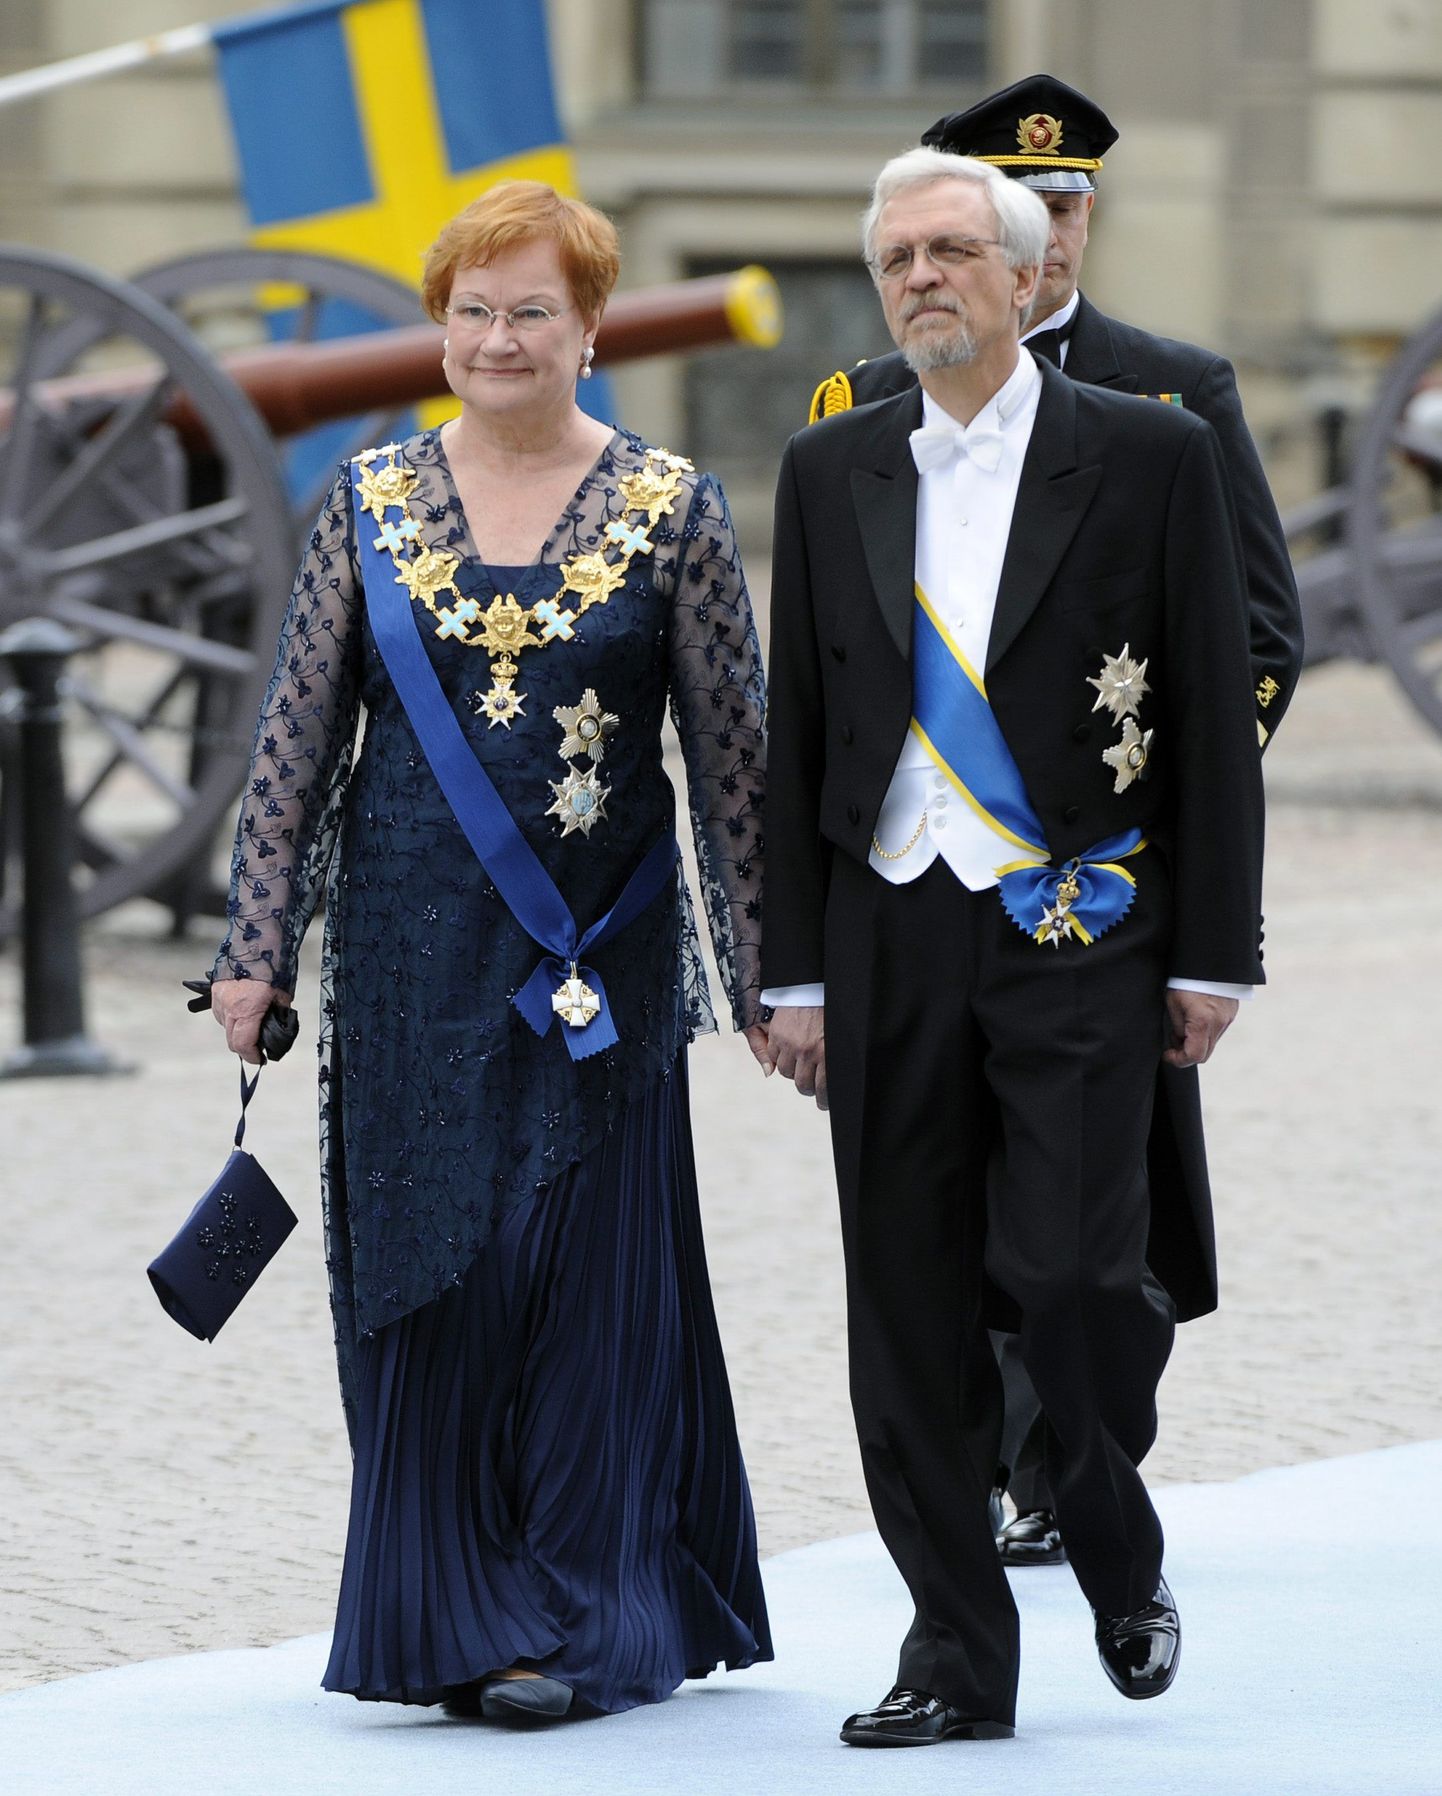 Tarja Halonen koos abikaasa Pentti Arajärviga tel Rootsi kroonprintsessi Victoria laulatusele.